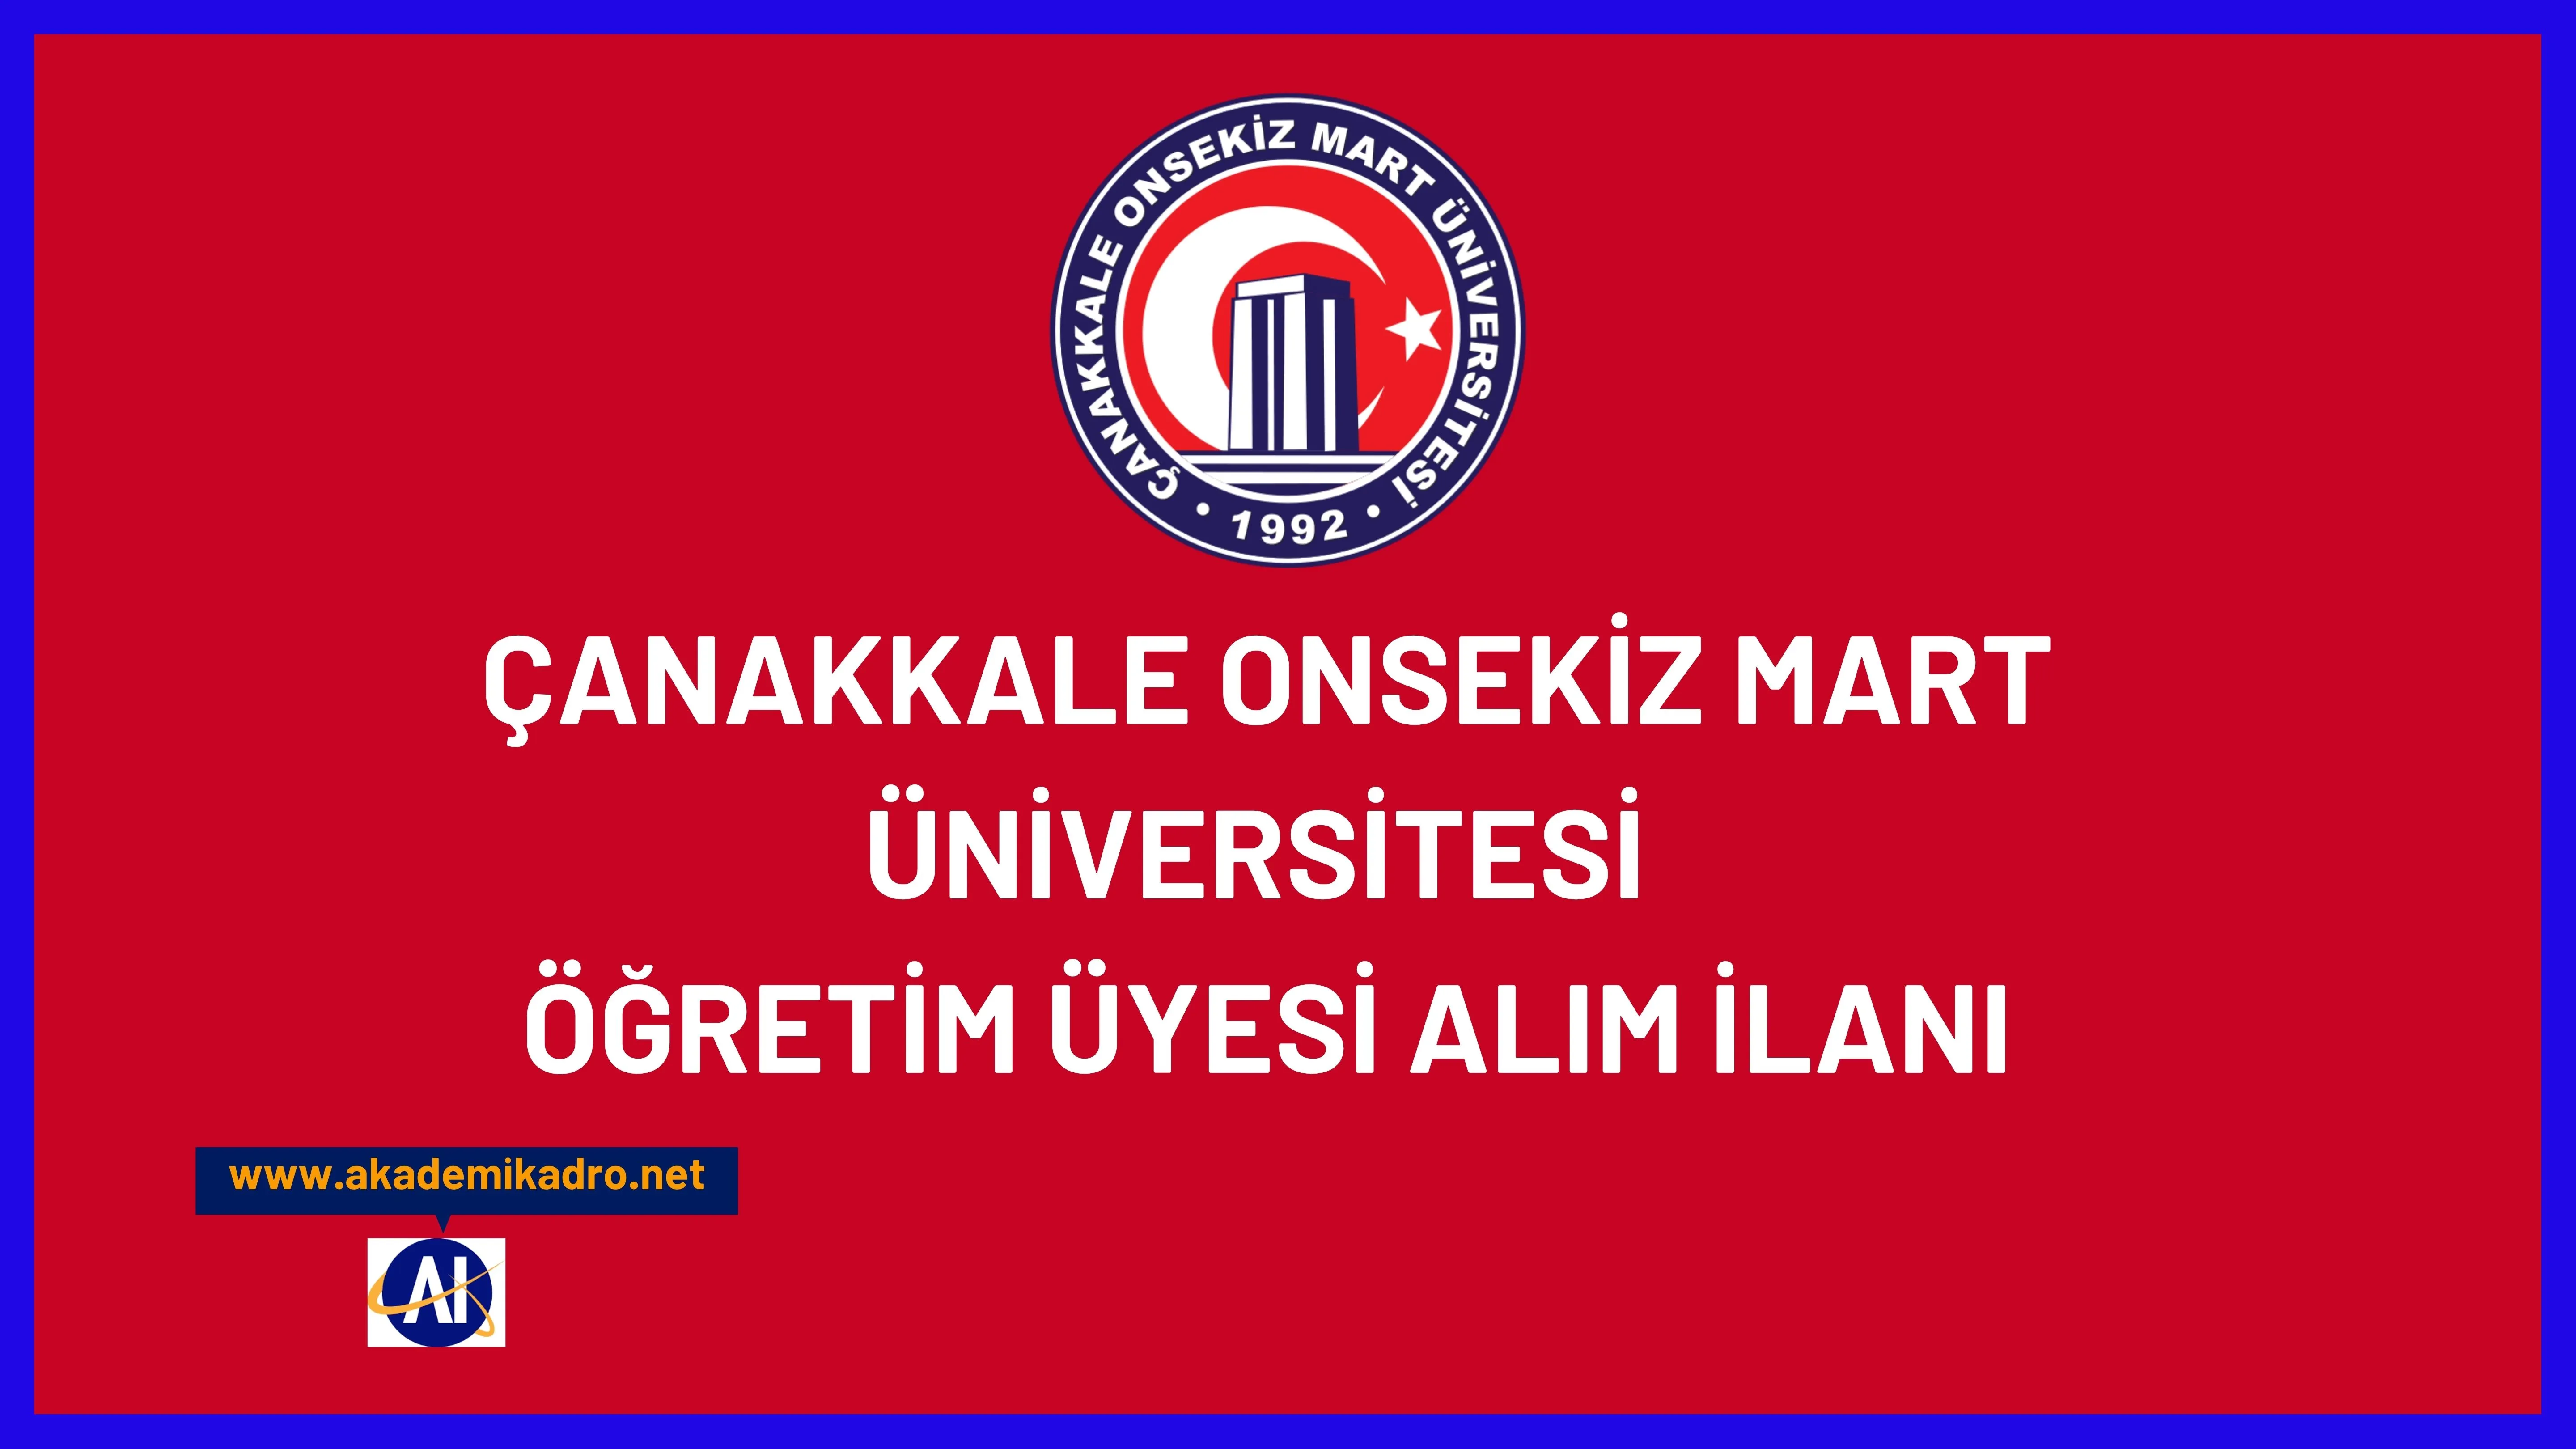 Çanakkale Onsekiz Mart Üniversitesi birçok alandan 76 Öğretim üyesi alacak. Son başvuru tarihi 26 Ekim 2022.